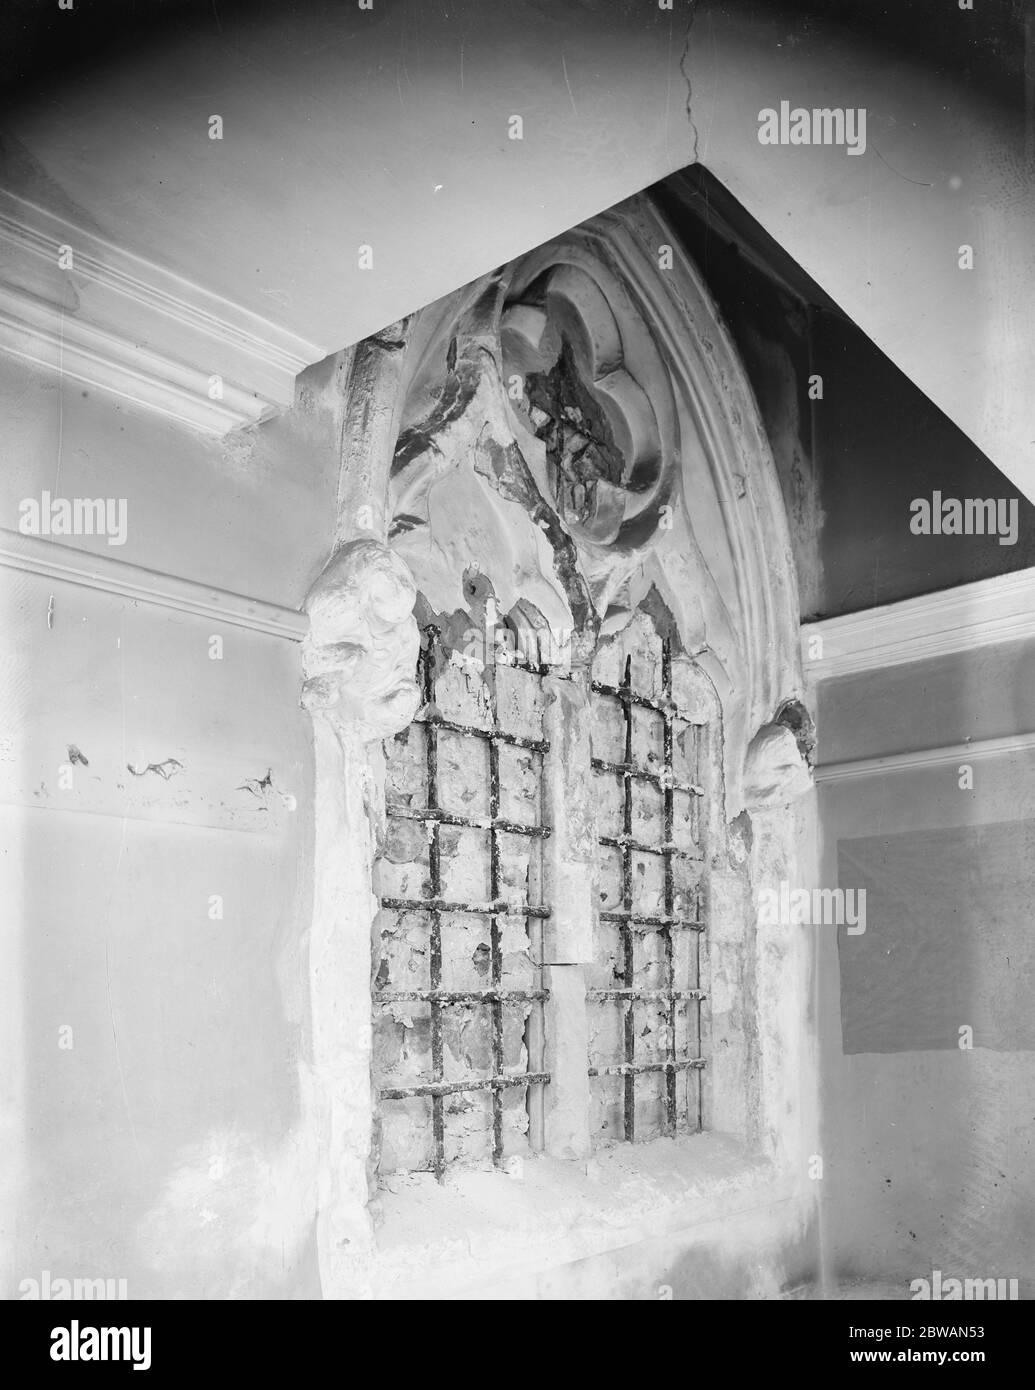 Bemerkenswerter Fund alter Glasmalereien in der Chelsea Old Church ein altes Fenster in der Chelsea Old Church, das seit fast 300 Jahren blockiert ist, wurde geöffnet. Hinter dem Putz versteckt sich die Reste eines Buntglasfensters aus dem frühen 14. Jahrhundert. Diese Entdeckung wird von Antiquaren als eine der höchsten Bedeutung angesehen. Das Bild zeigt das alte Fenster, nachdem es geöffnet und das Buntglas entfernt wurde Stockfoto